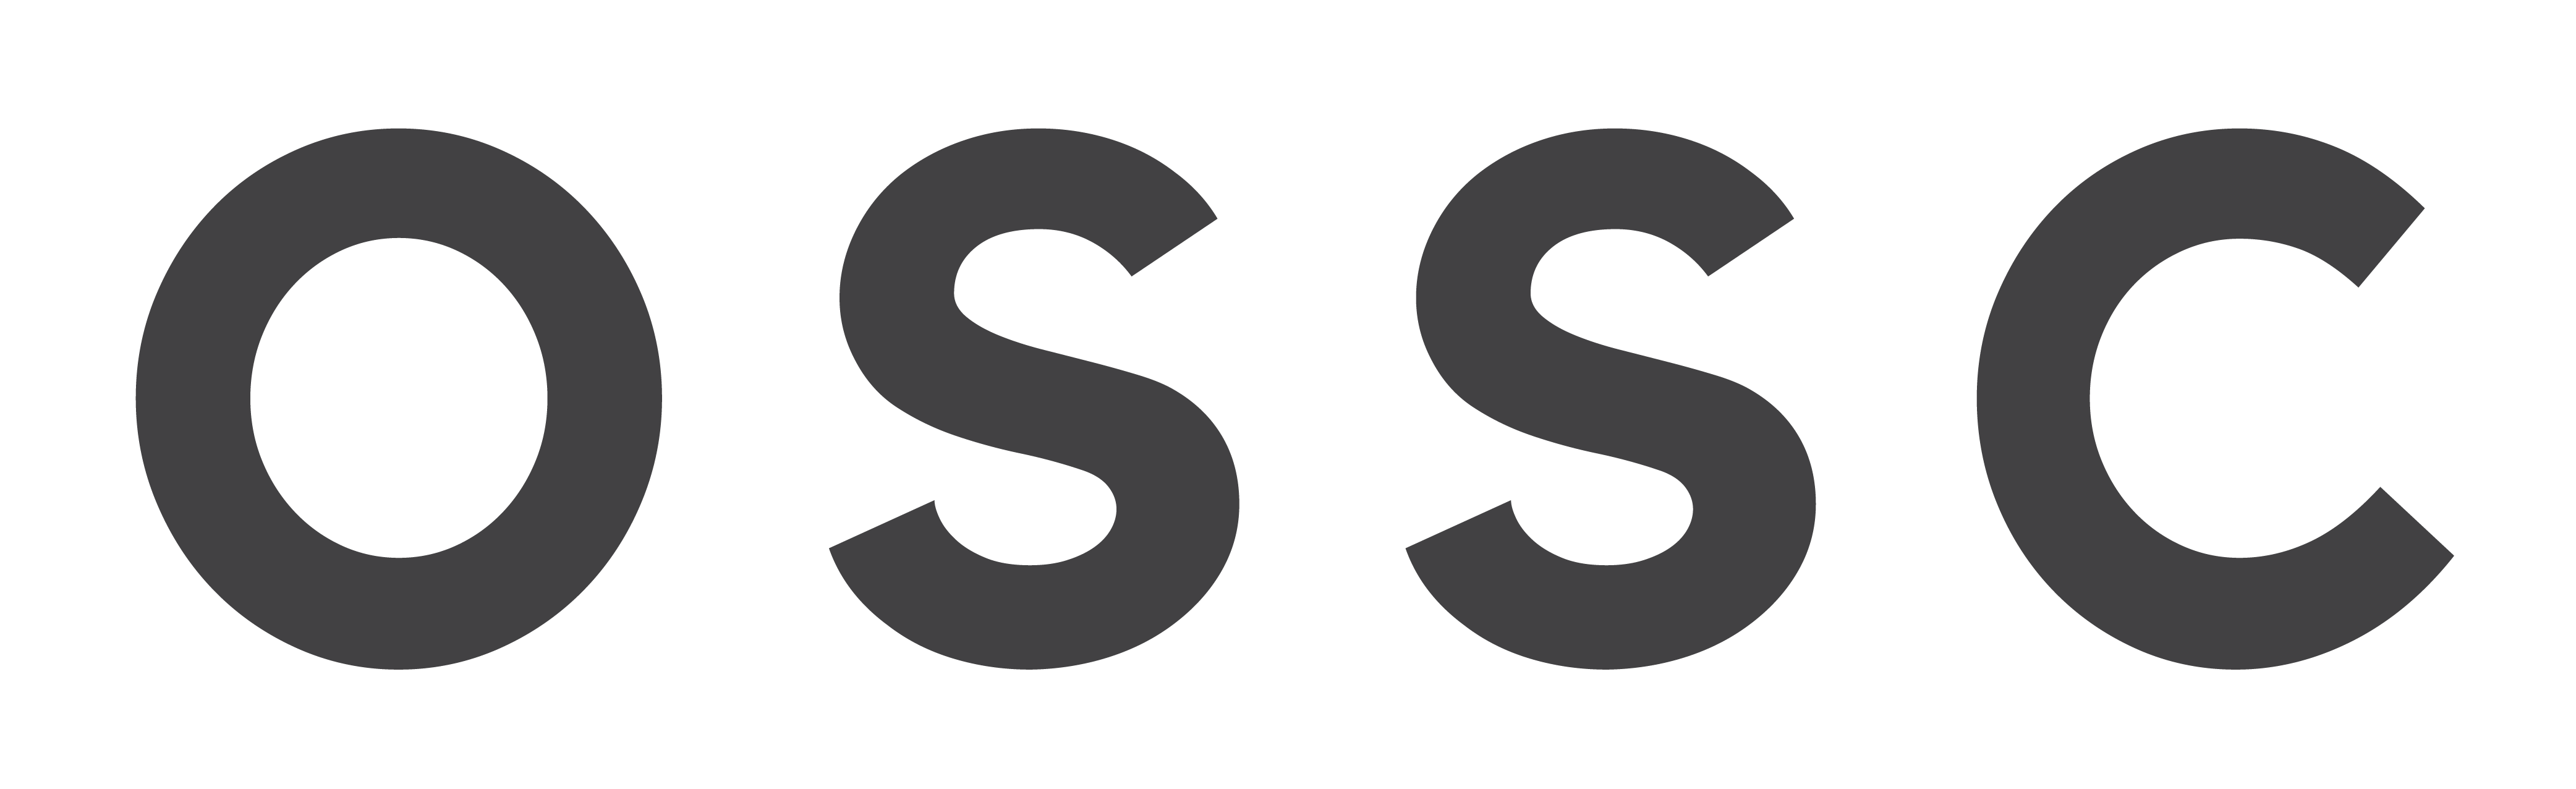 OSSC Logo